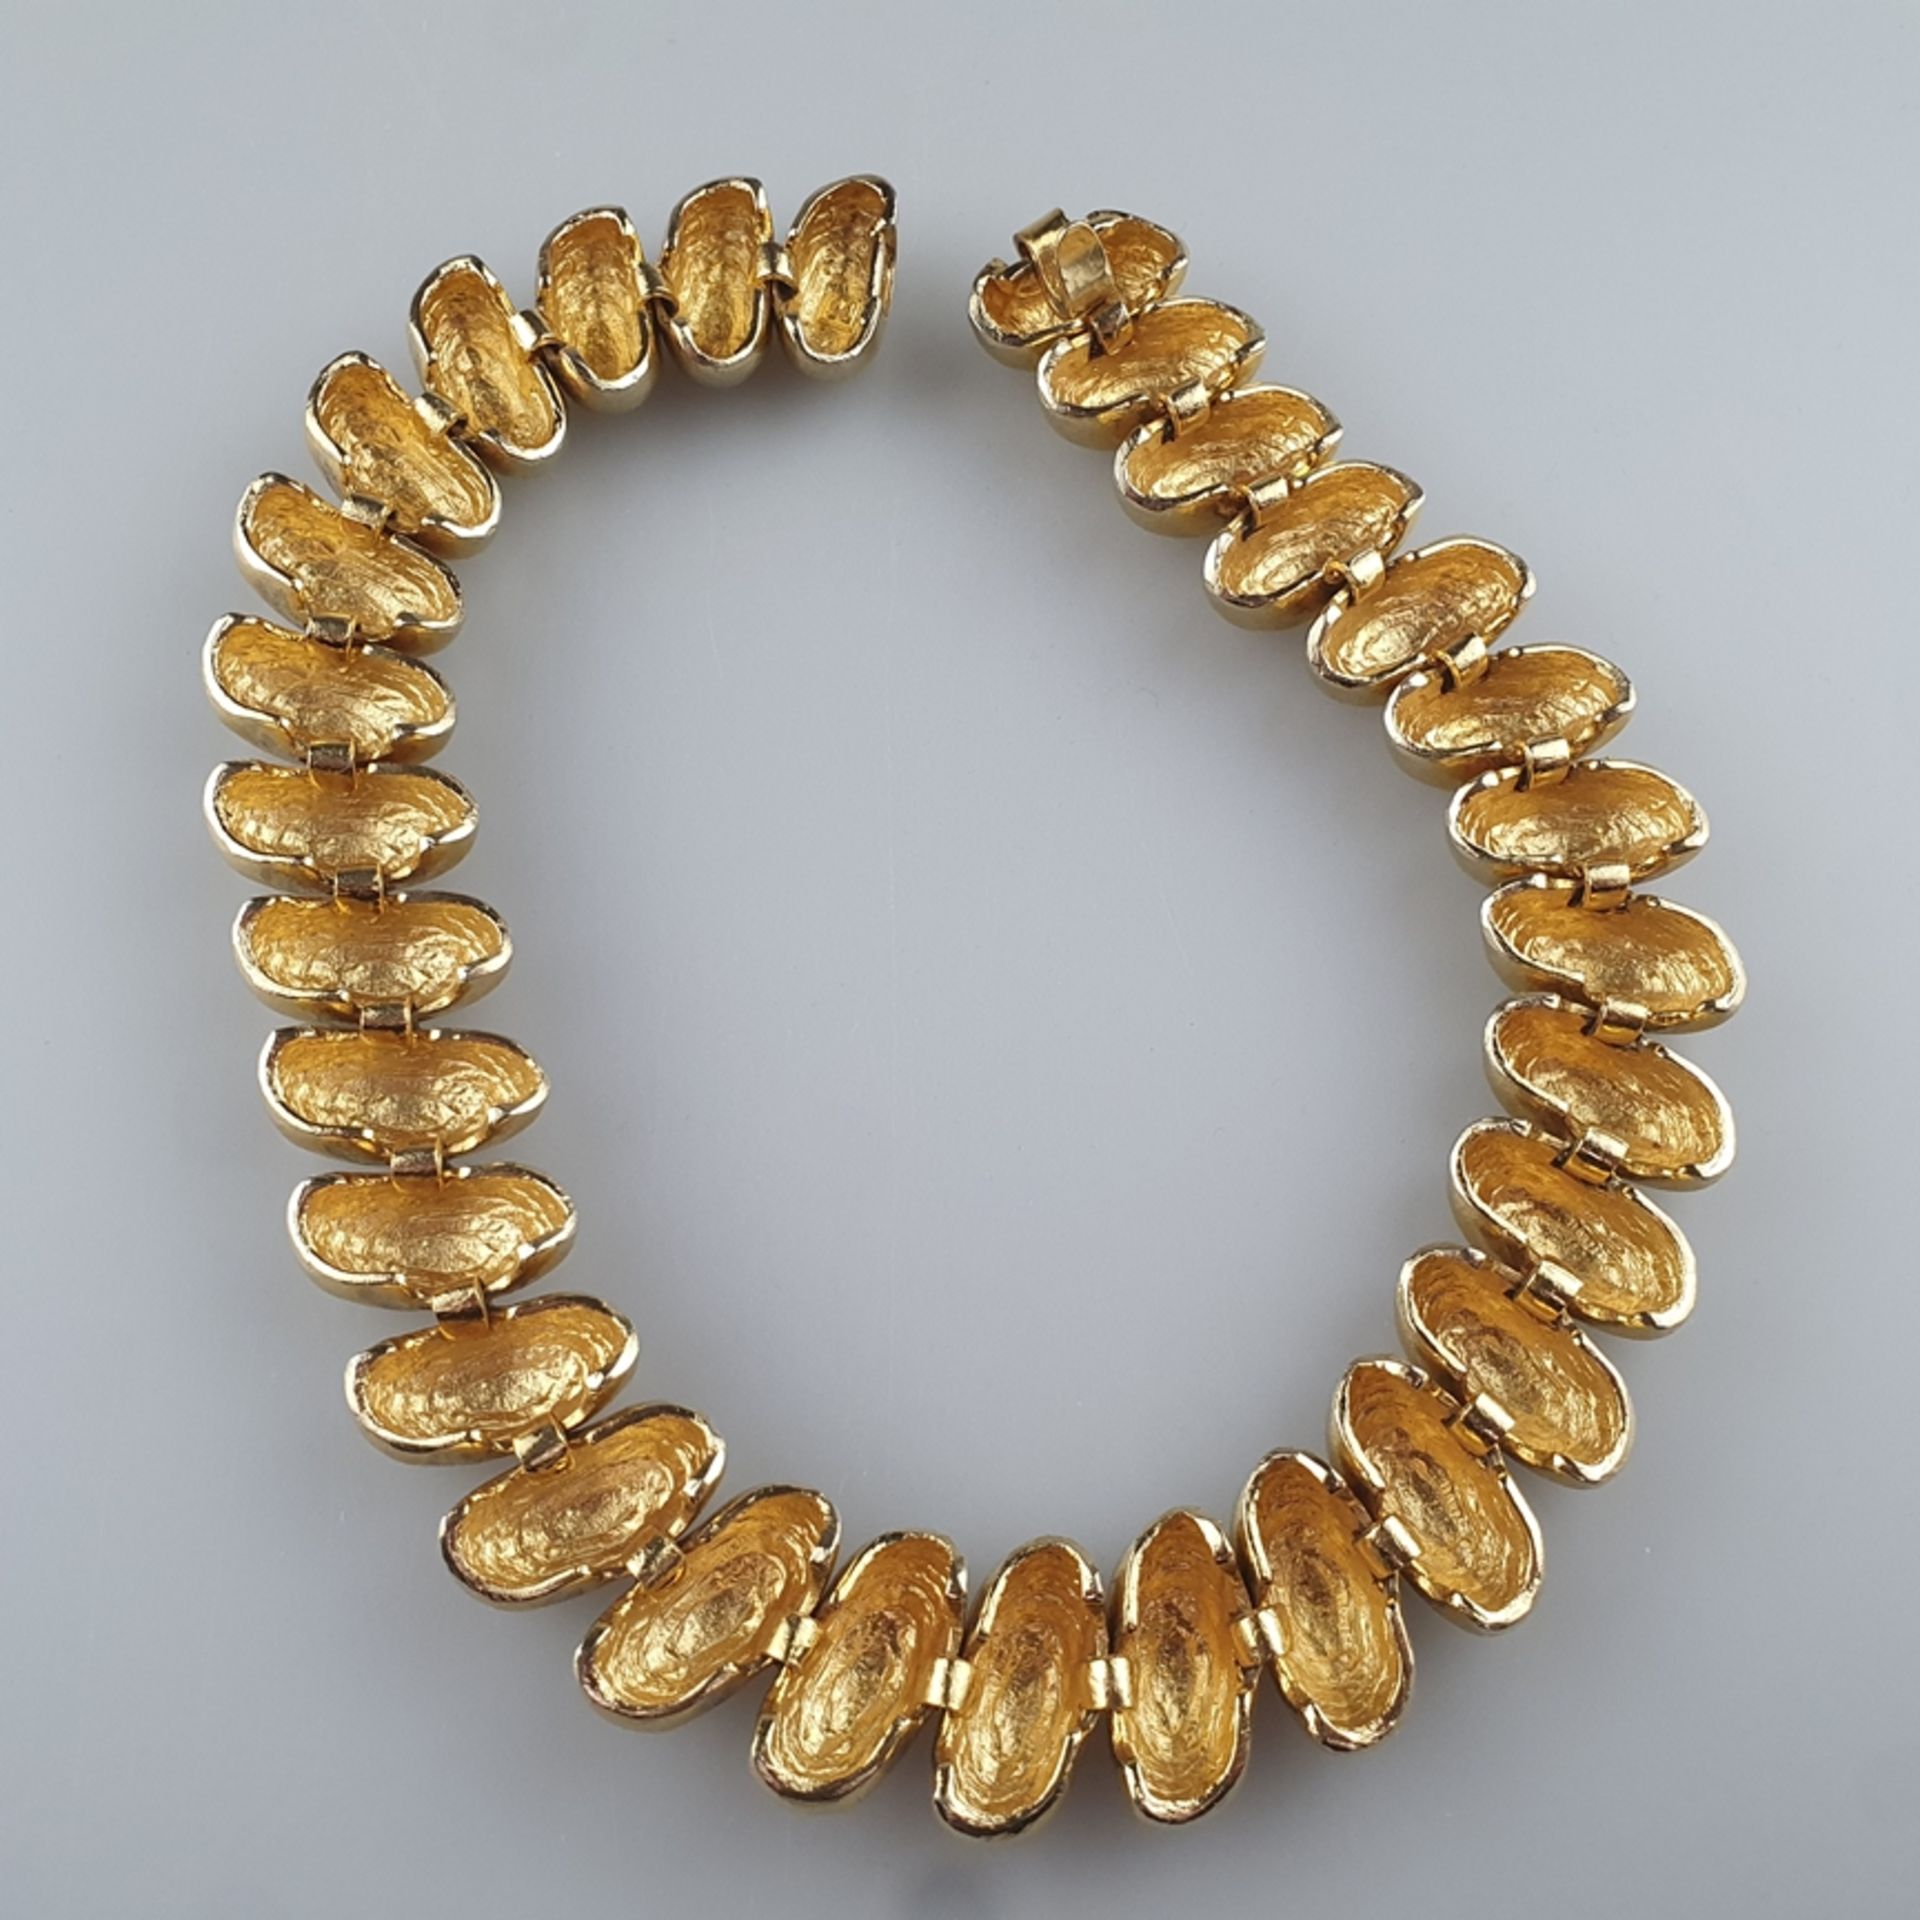 Massives Vintage-Statement-Collier - vergoldetes Metall, bohnenförmige miteinander verbundene Glied - Bild 5 aus 5